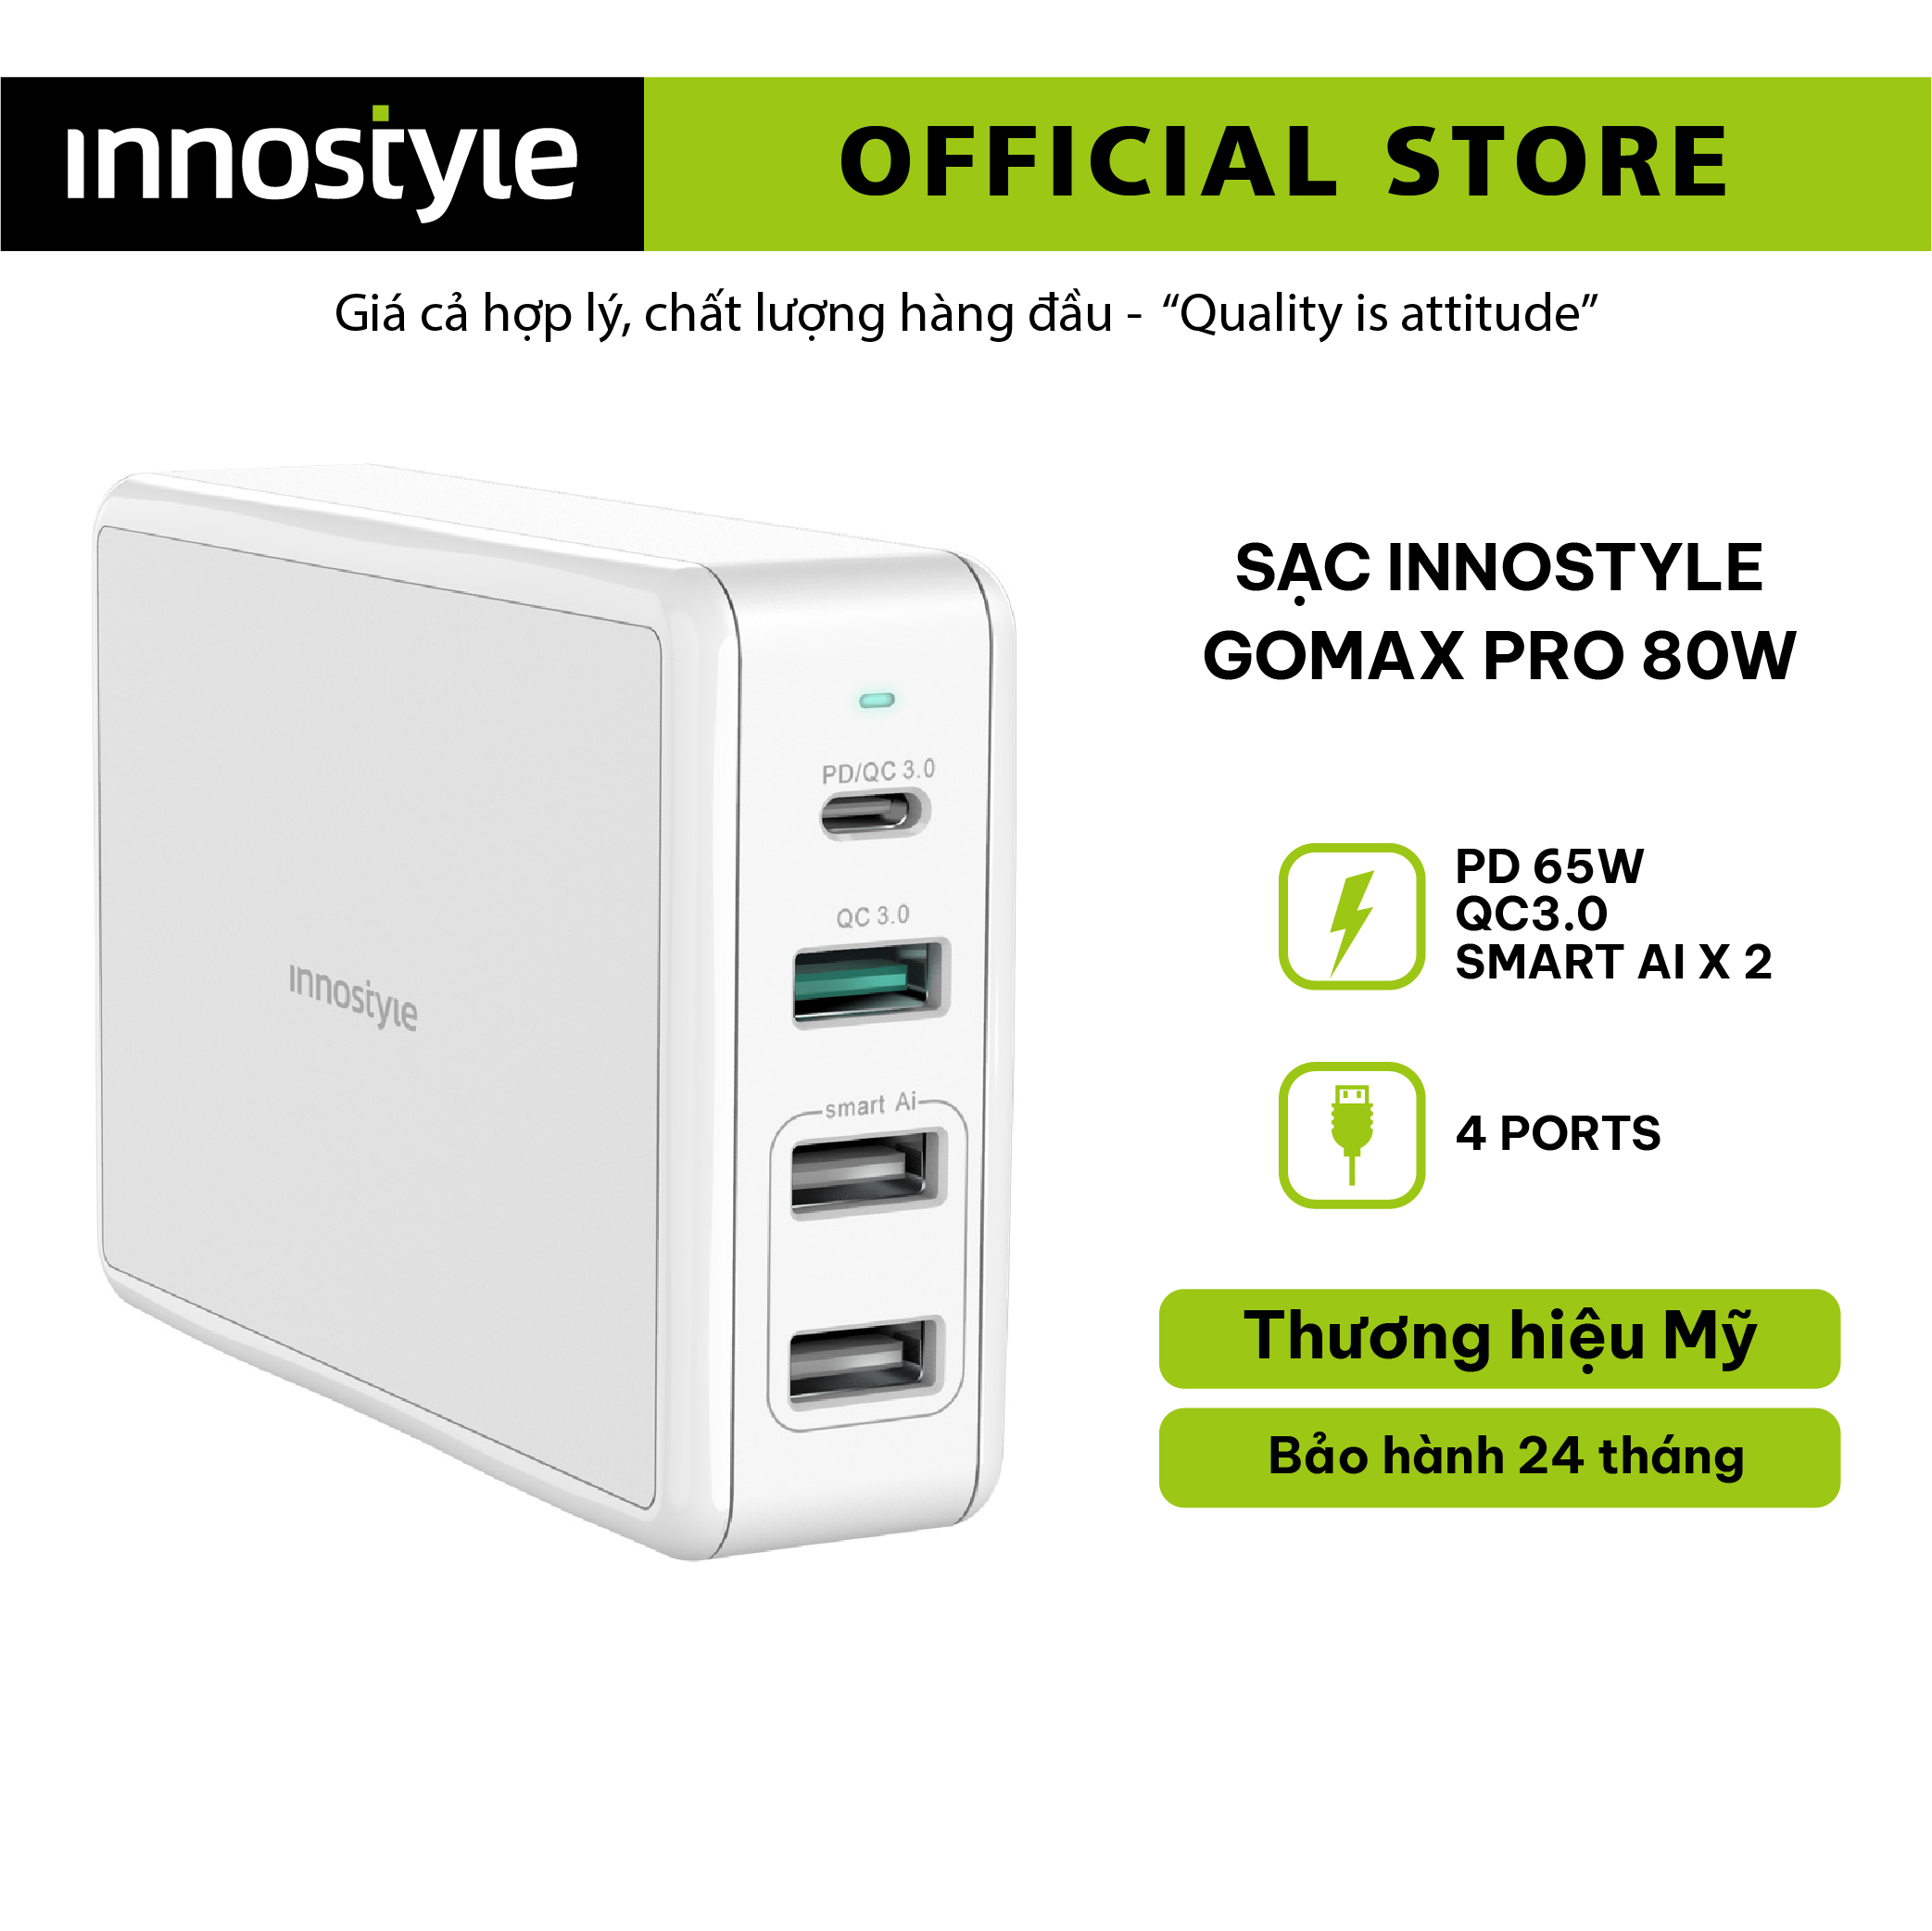 Adapter Sạc 4 Cổng Cho Macbook Innostyle Gomax Pro 80W Tích Hợp USB Type-C Power Delivery Hỗ Trợ Sạc Nhanh Quick Charge 3.0 - Hàng Chính Hãng